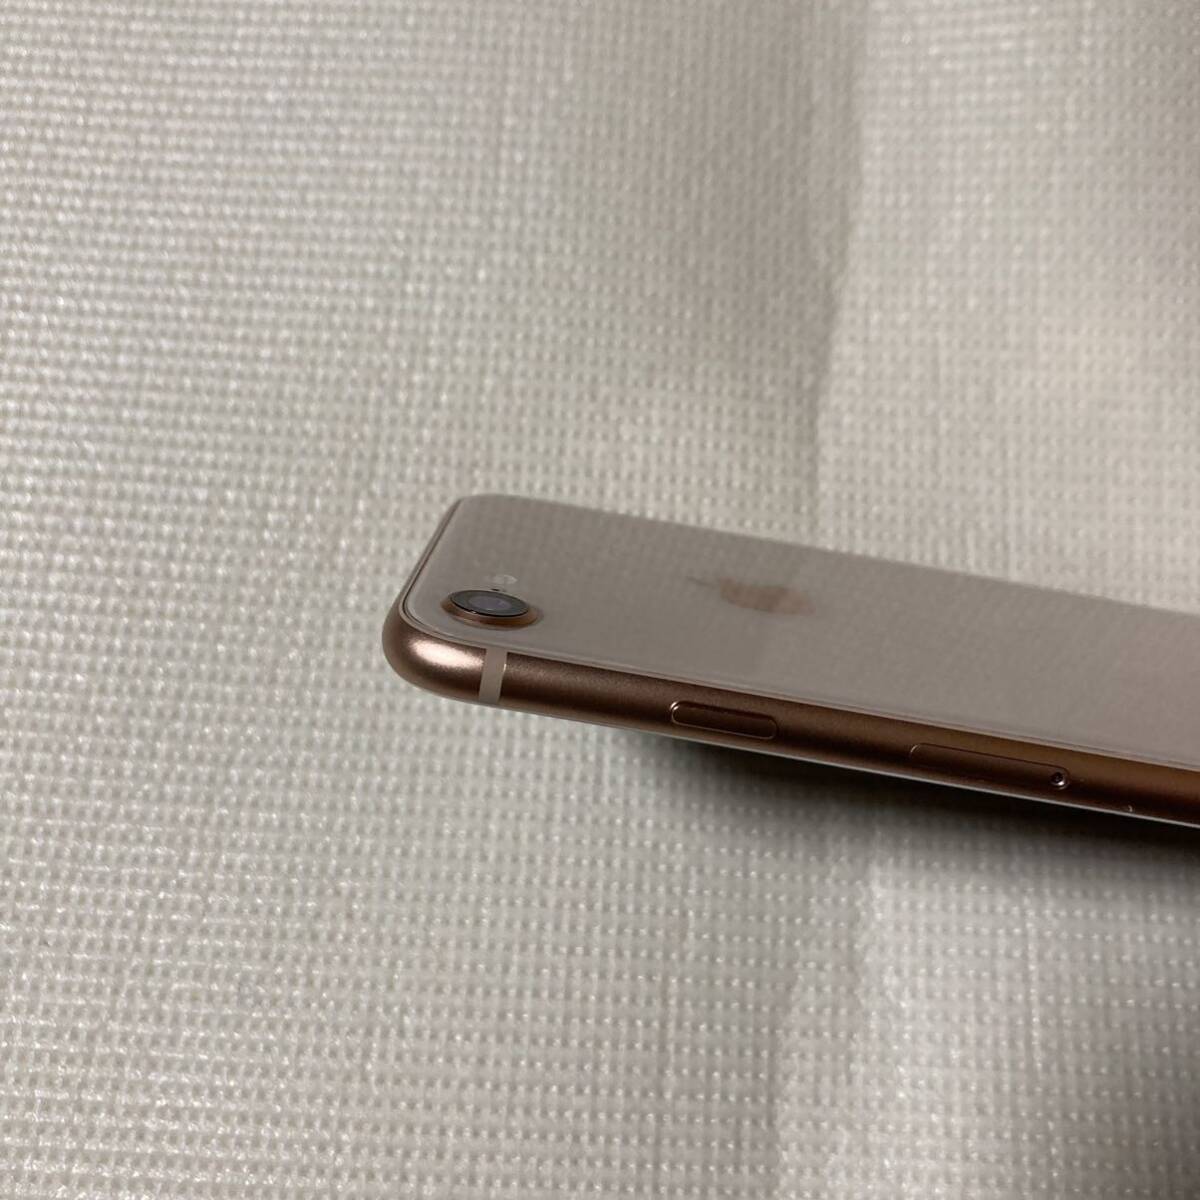 送料無料 超美品 SIMフリー iPhone8 256GB ゴールド バッテリー最大容量100% SIMロック解除済 付属品_画像7